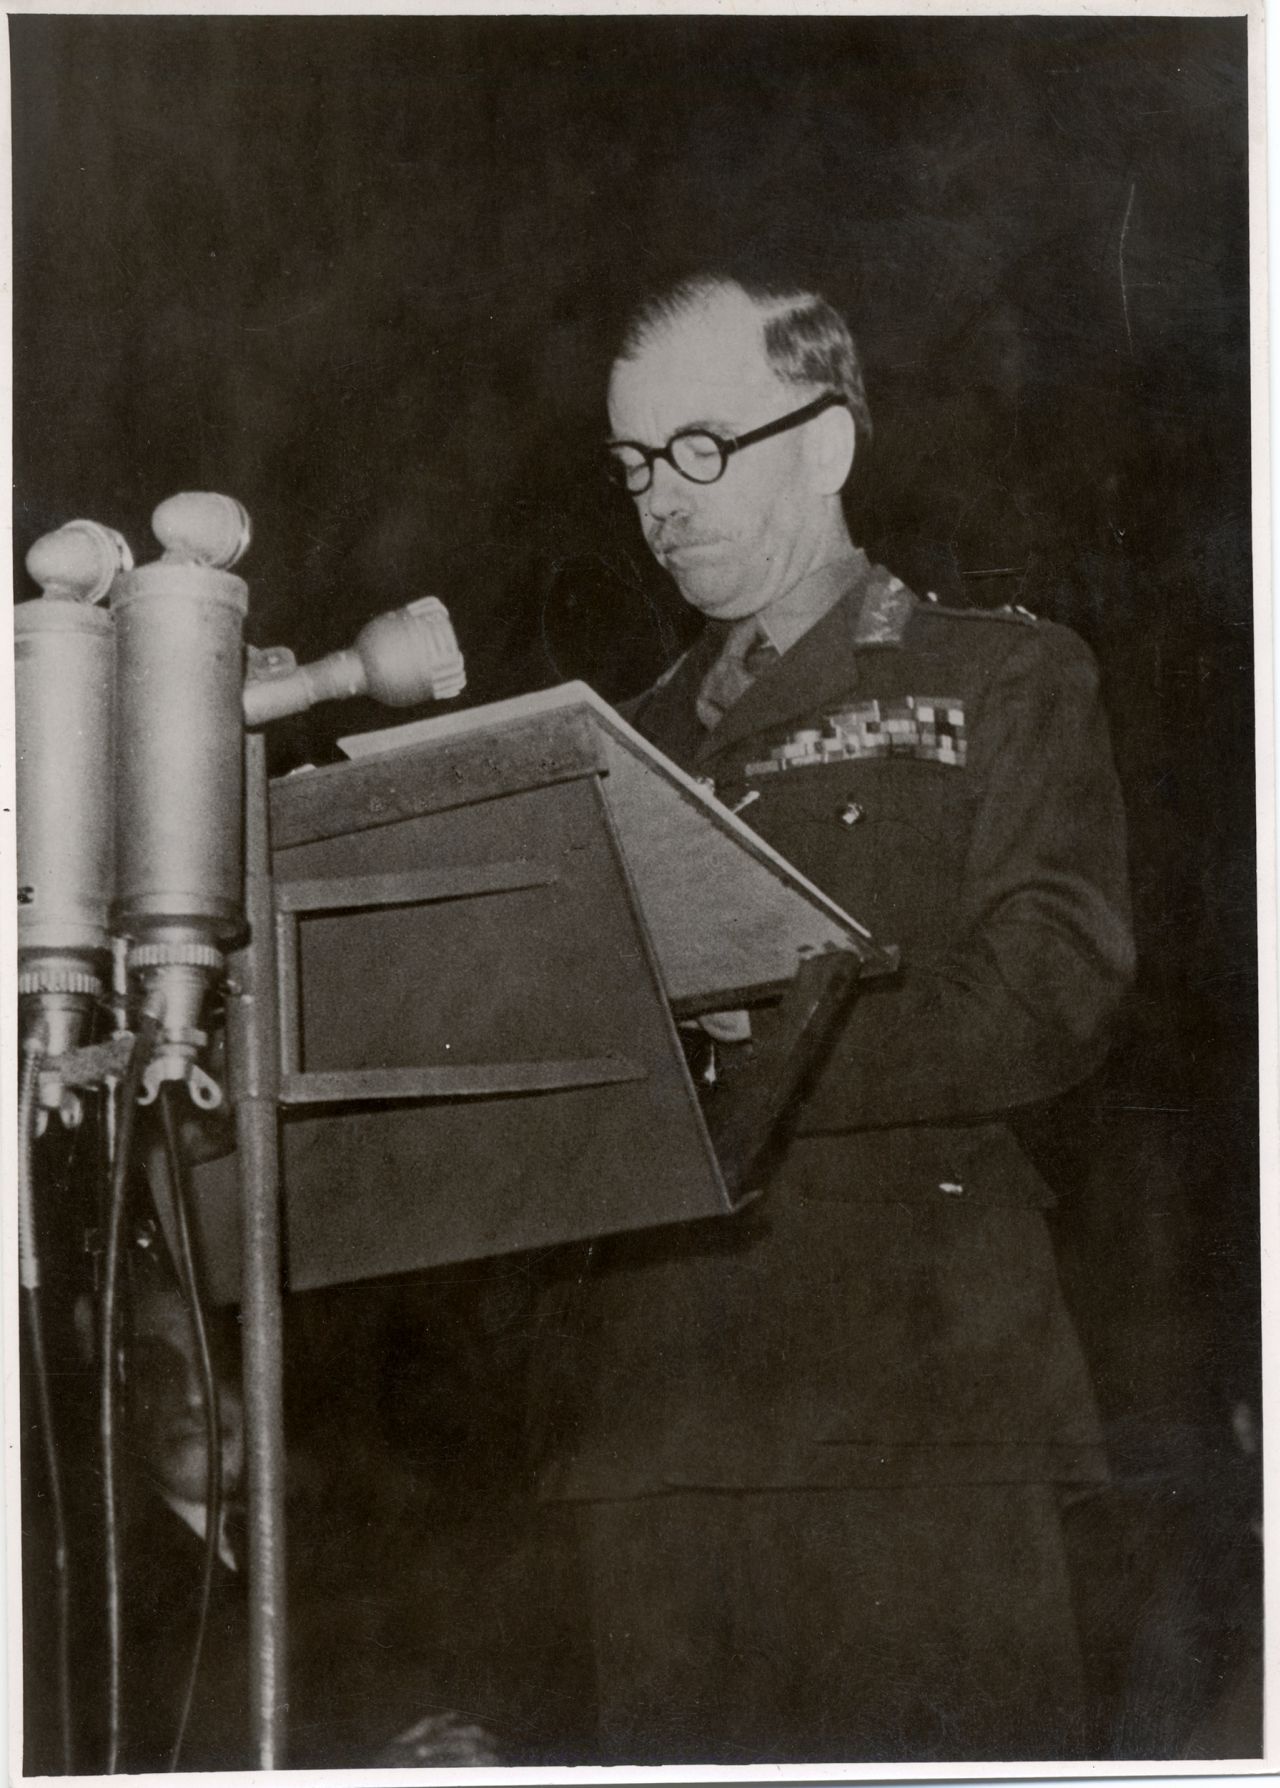 General Brian Robertson, Oberbefehlshaber der britischen Besatzungszone, während einer Rede vor dem Landtag von Nordrhein-Westfalen, April 1948.